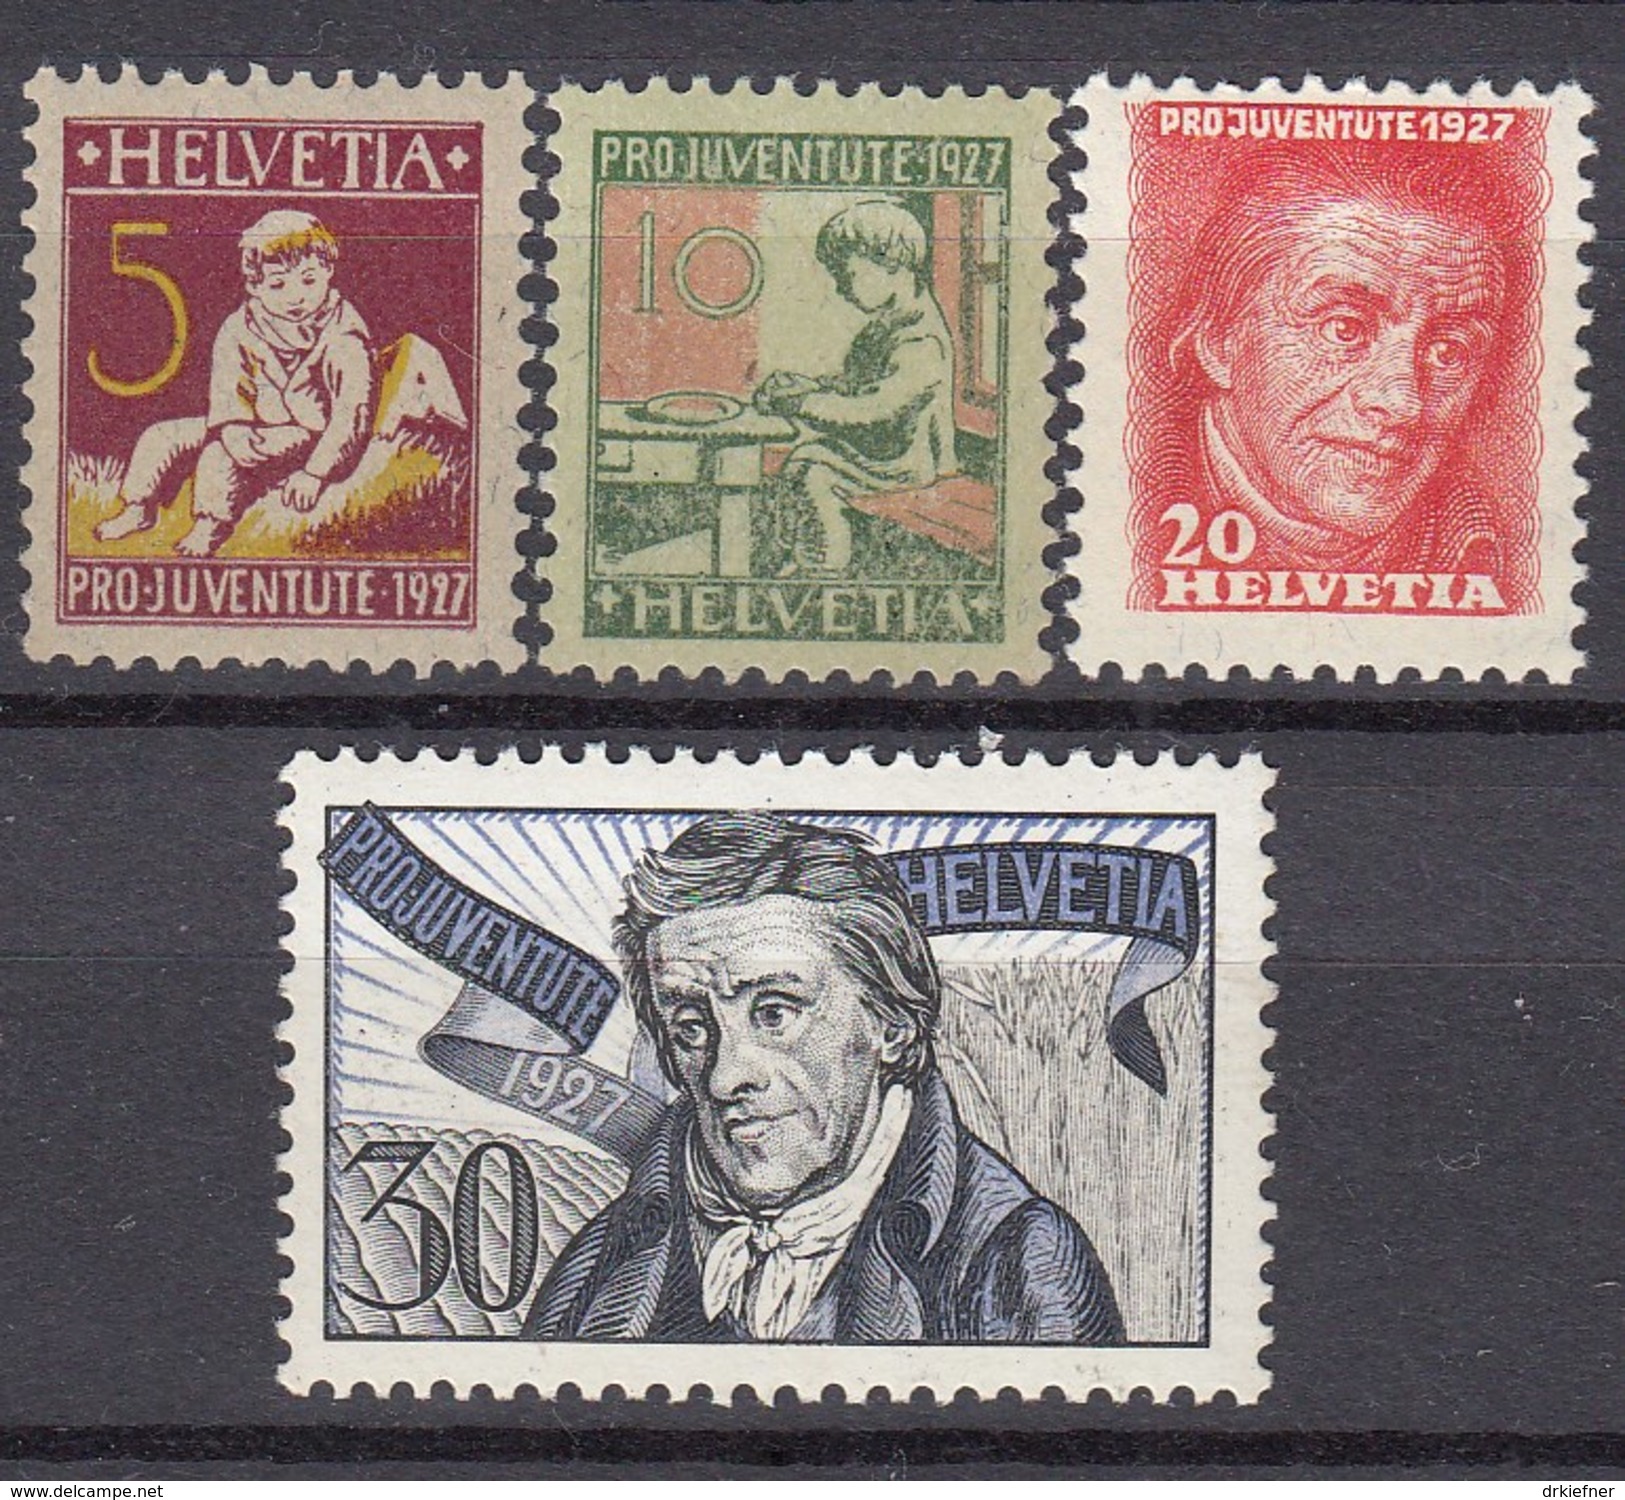 SCHWEIZ  222-225, Postfrisch **, Pro Juventute: Pestalozzi  1927 - Unused Stamps